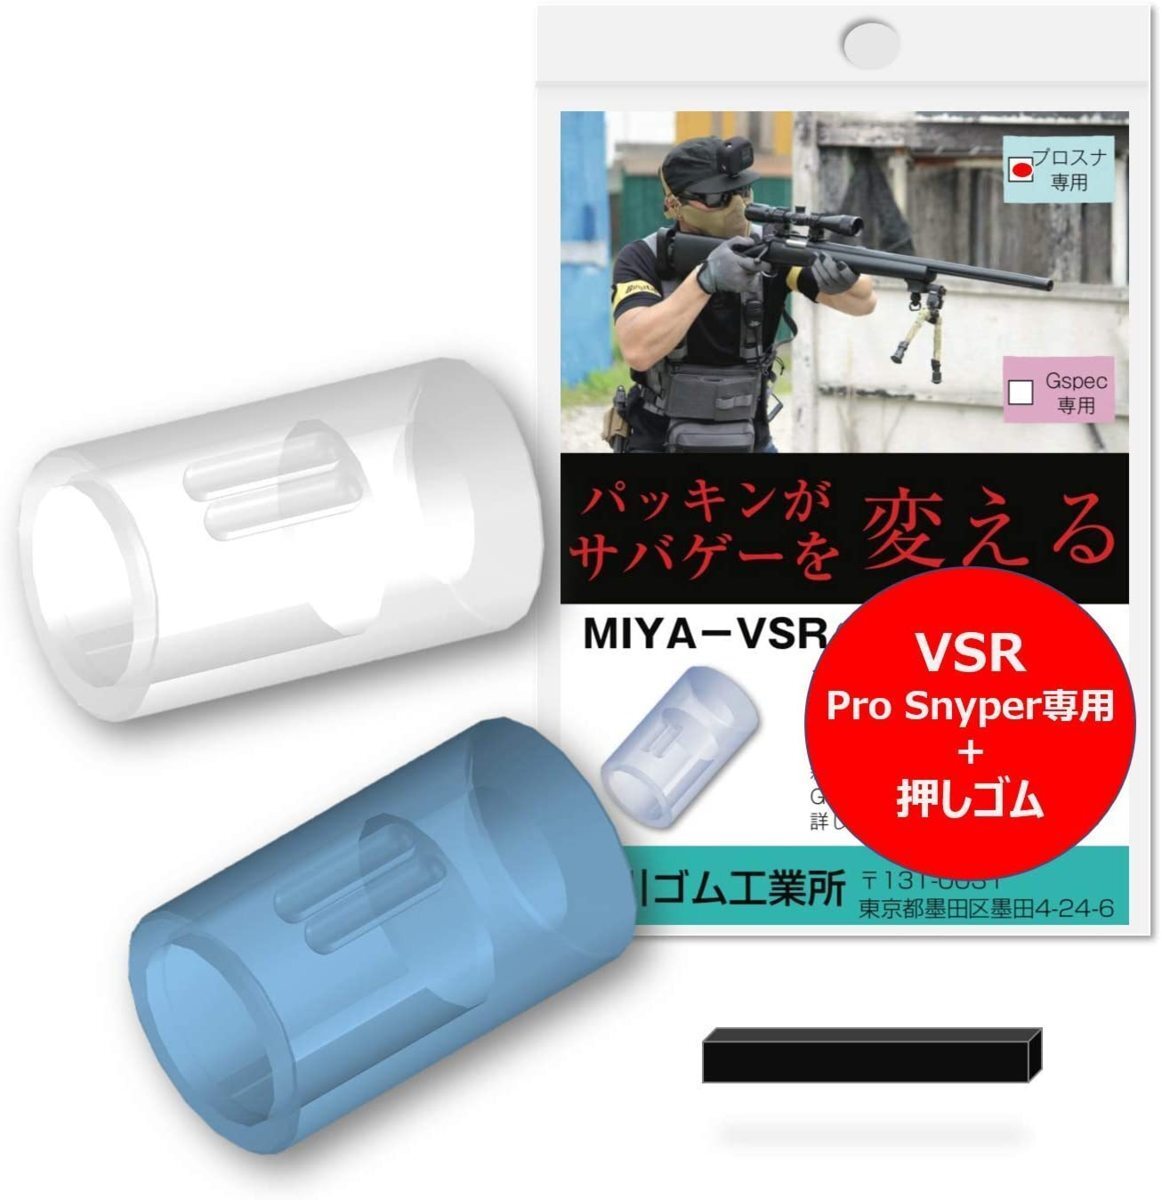 宮川ゴム・VSR-10プロスナイパー専用 チャンバーパッキン押しゴム付き MIYA-VSRの画像1